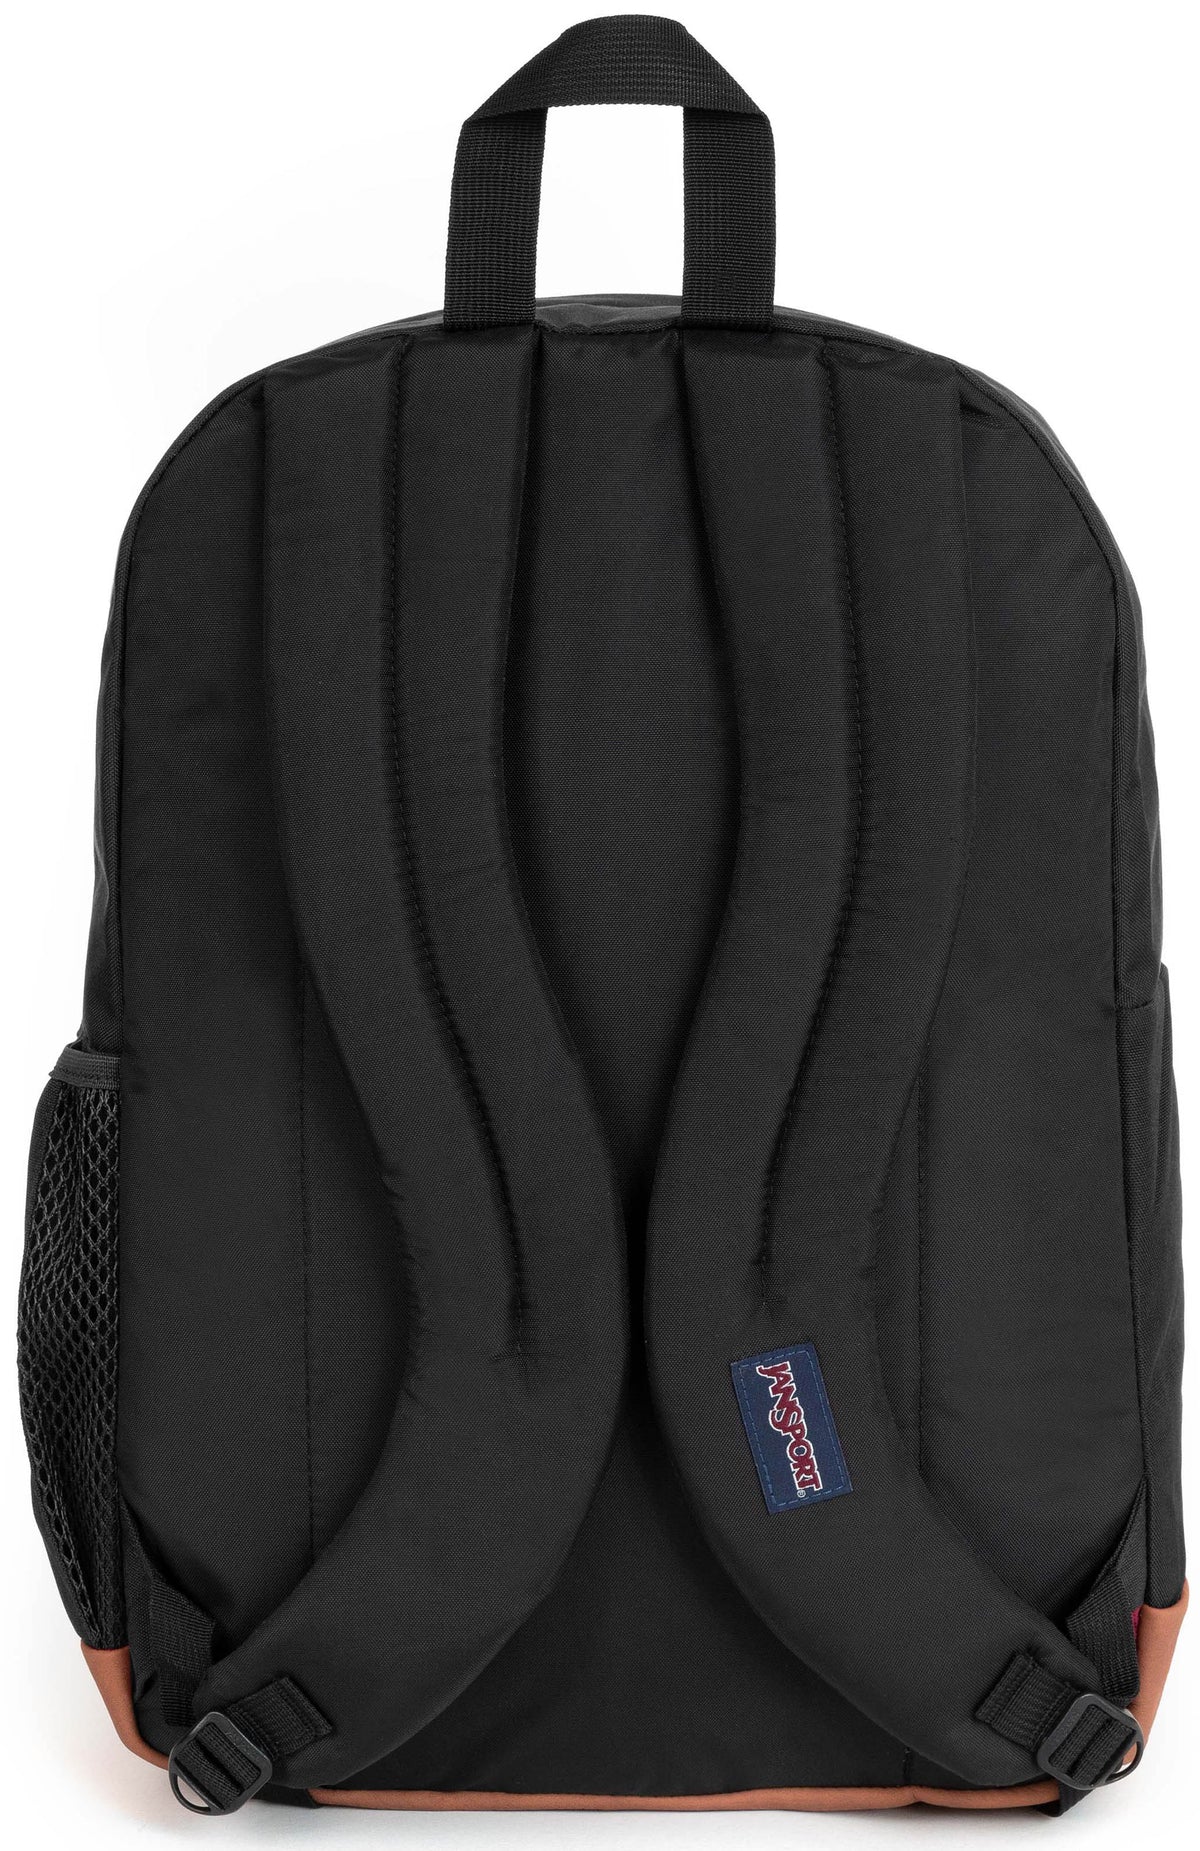 Jansport Cool Student Backpack - Black